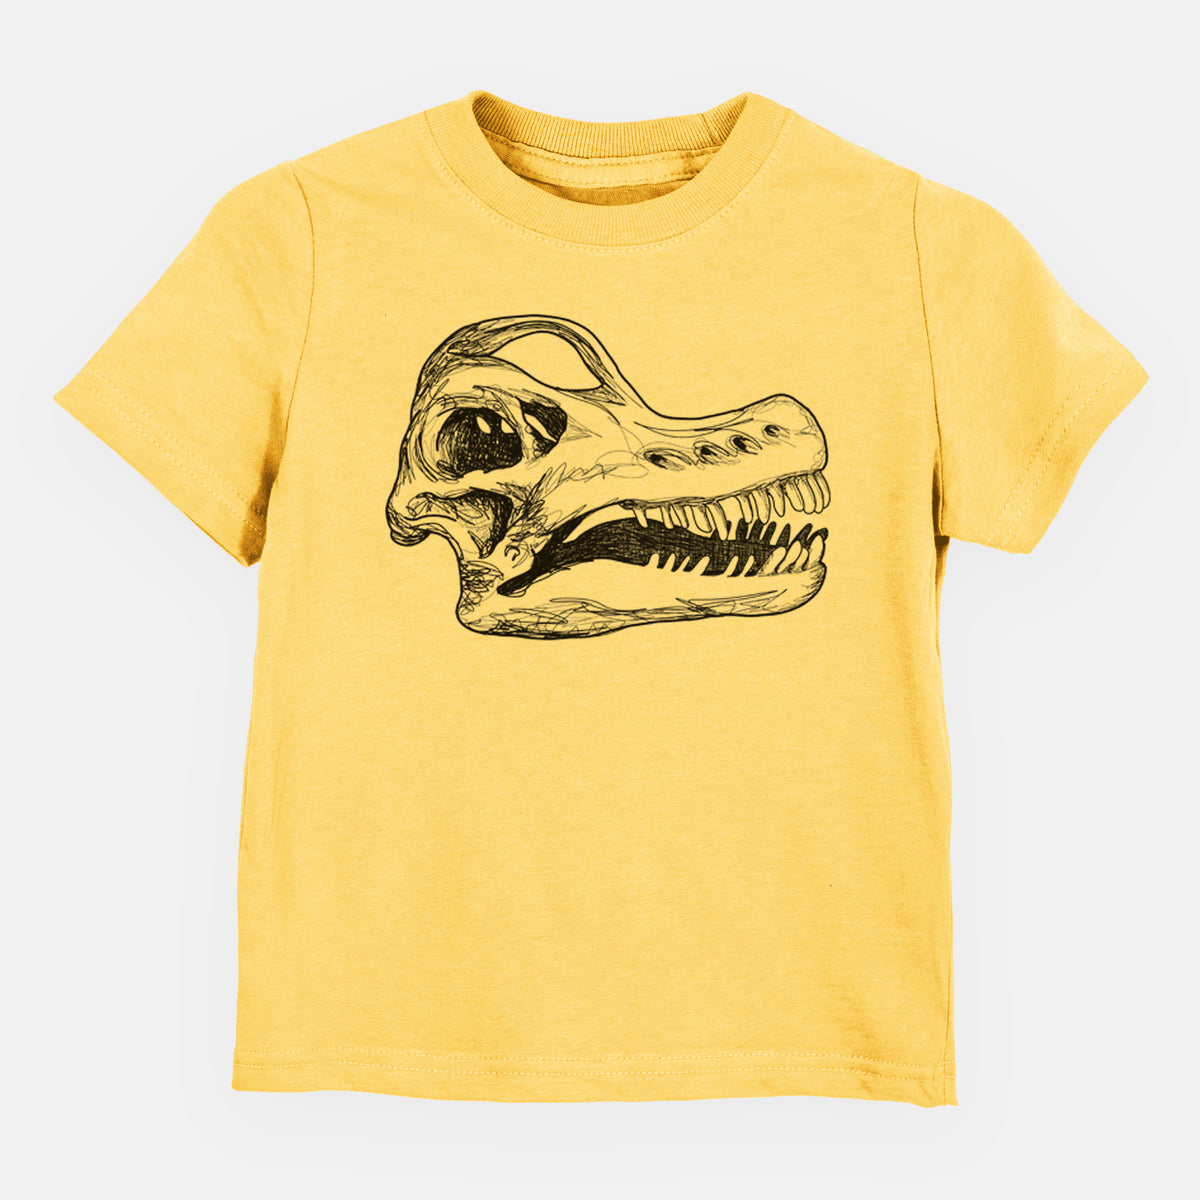 Brachiosaurus Skull - Kids Shirt